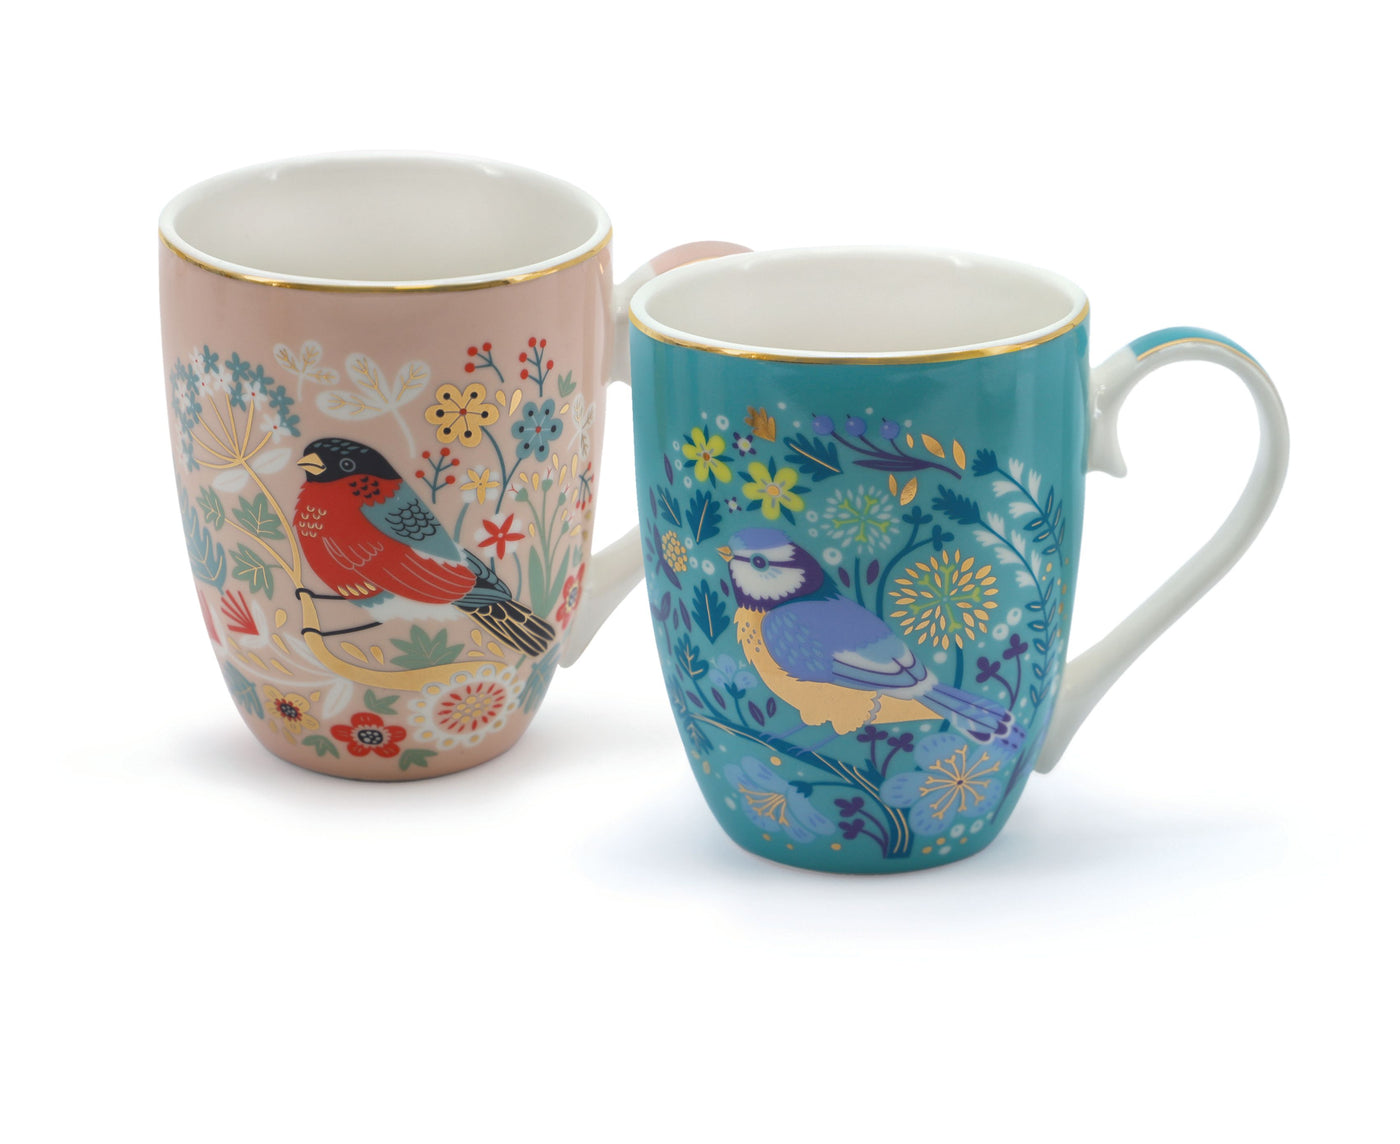 Tipperary Crystal Birdy Mug - Set of 2 - Blue Tit & Bullfinch